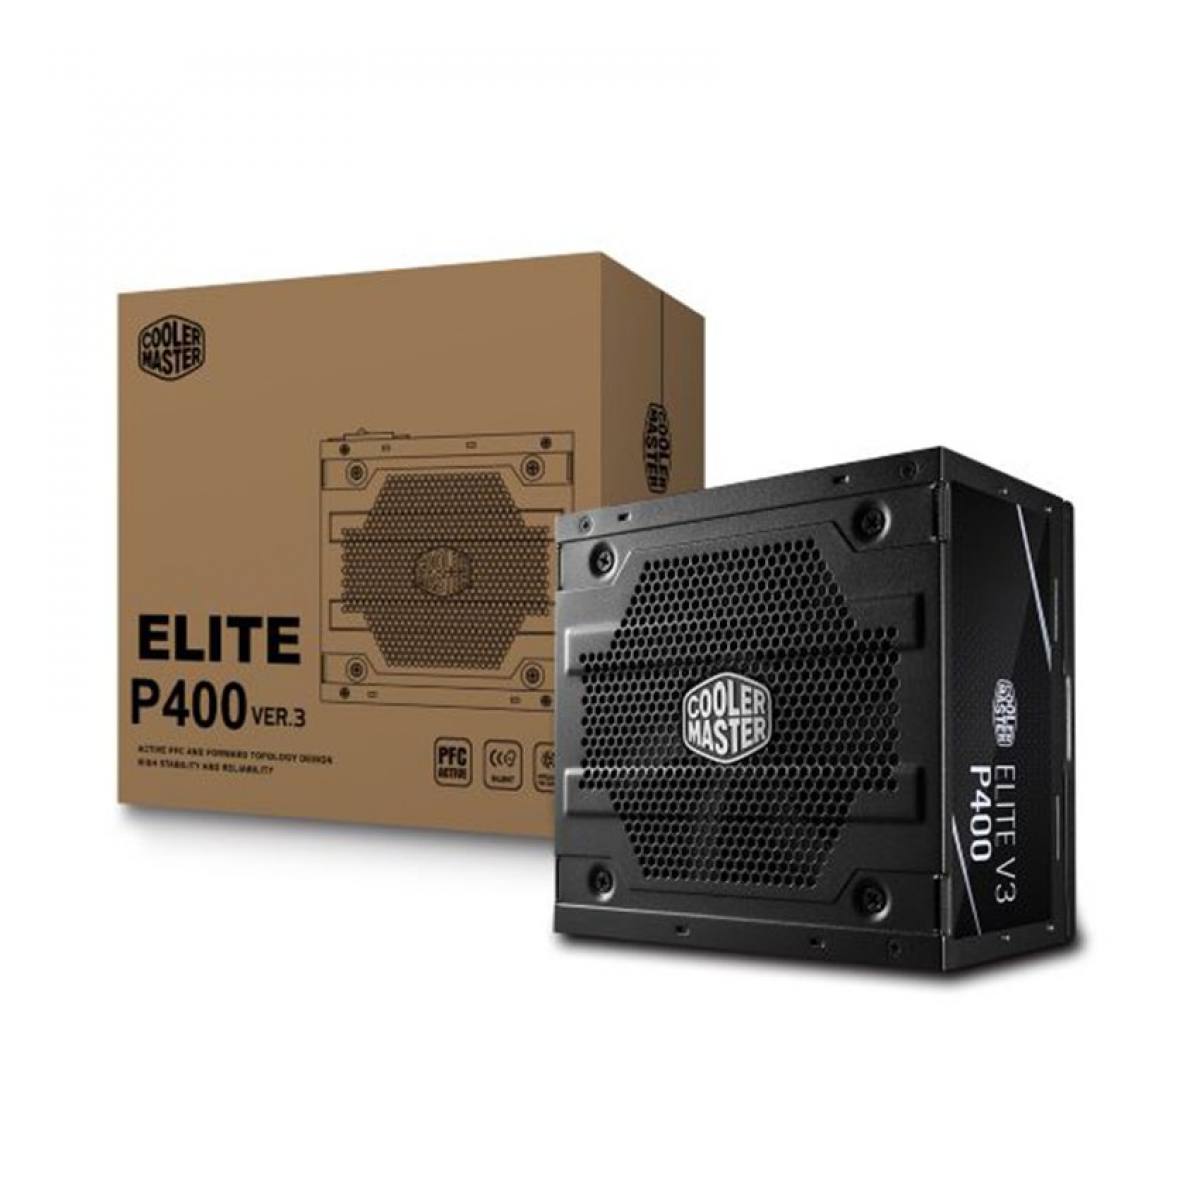 Nguồn Cooler Master Elite V3 230V PC400 SGCC BULK